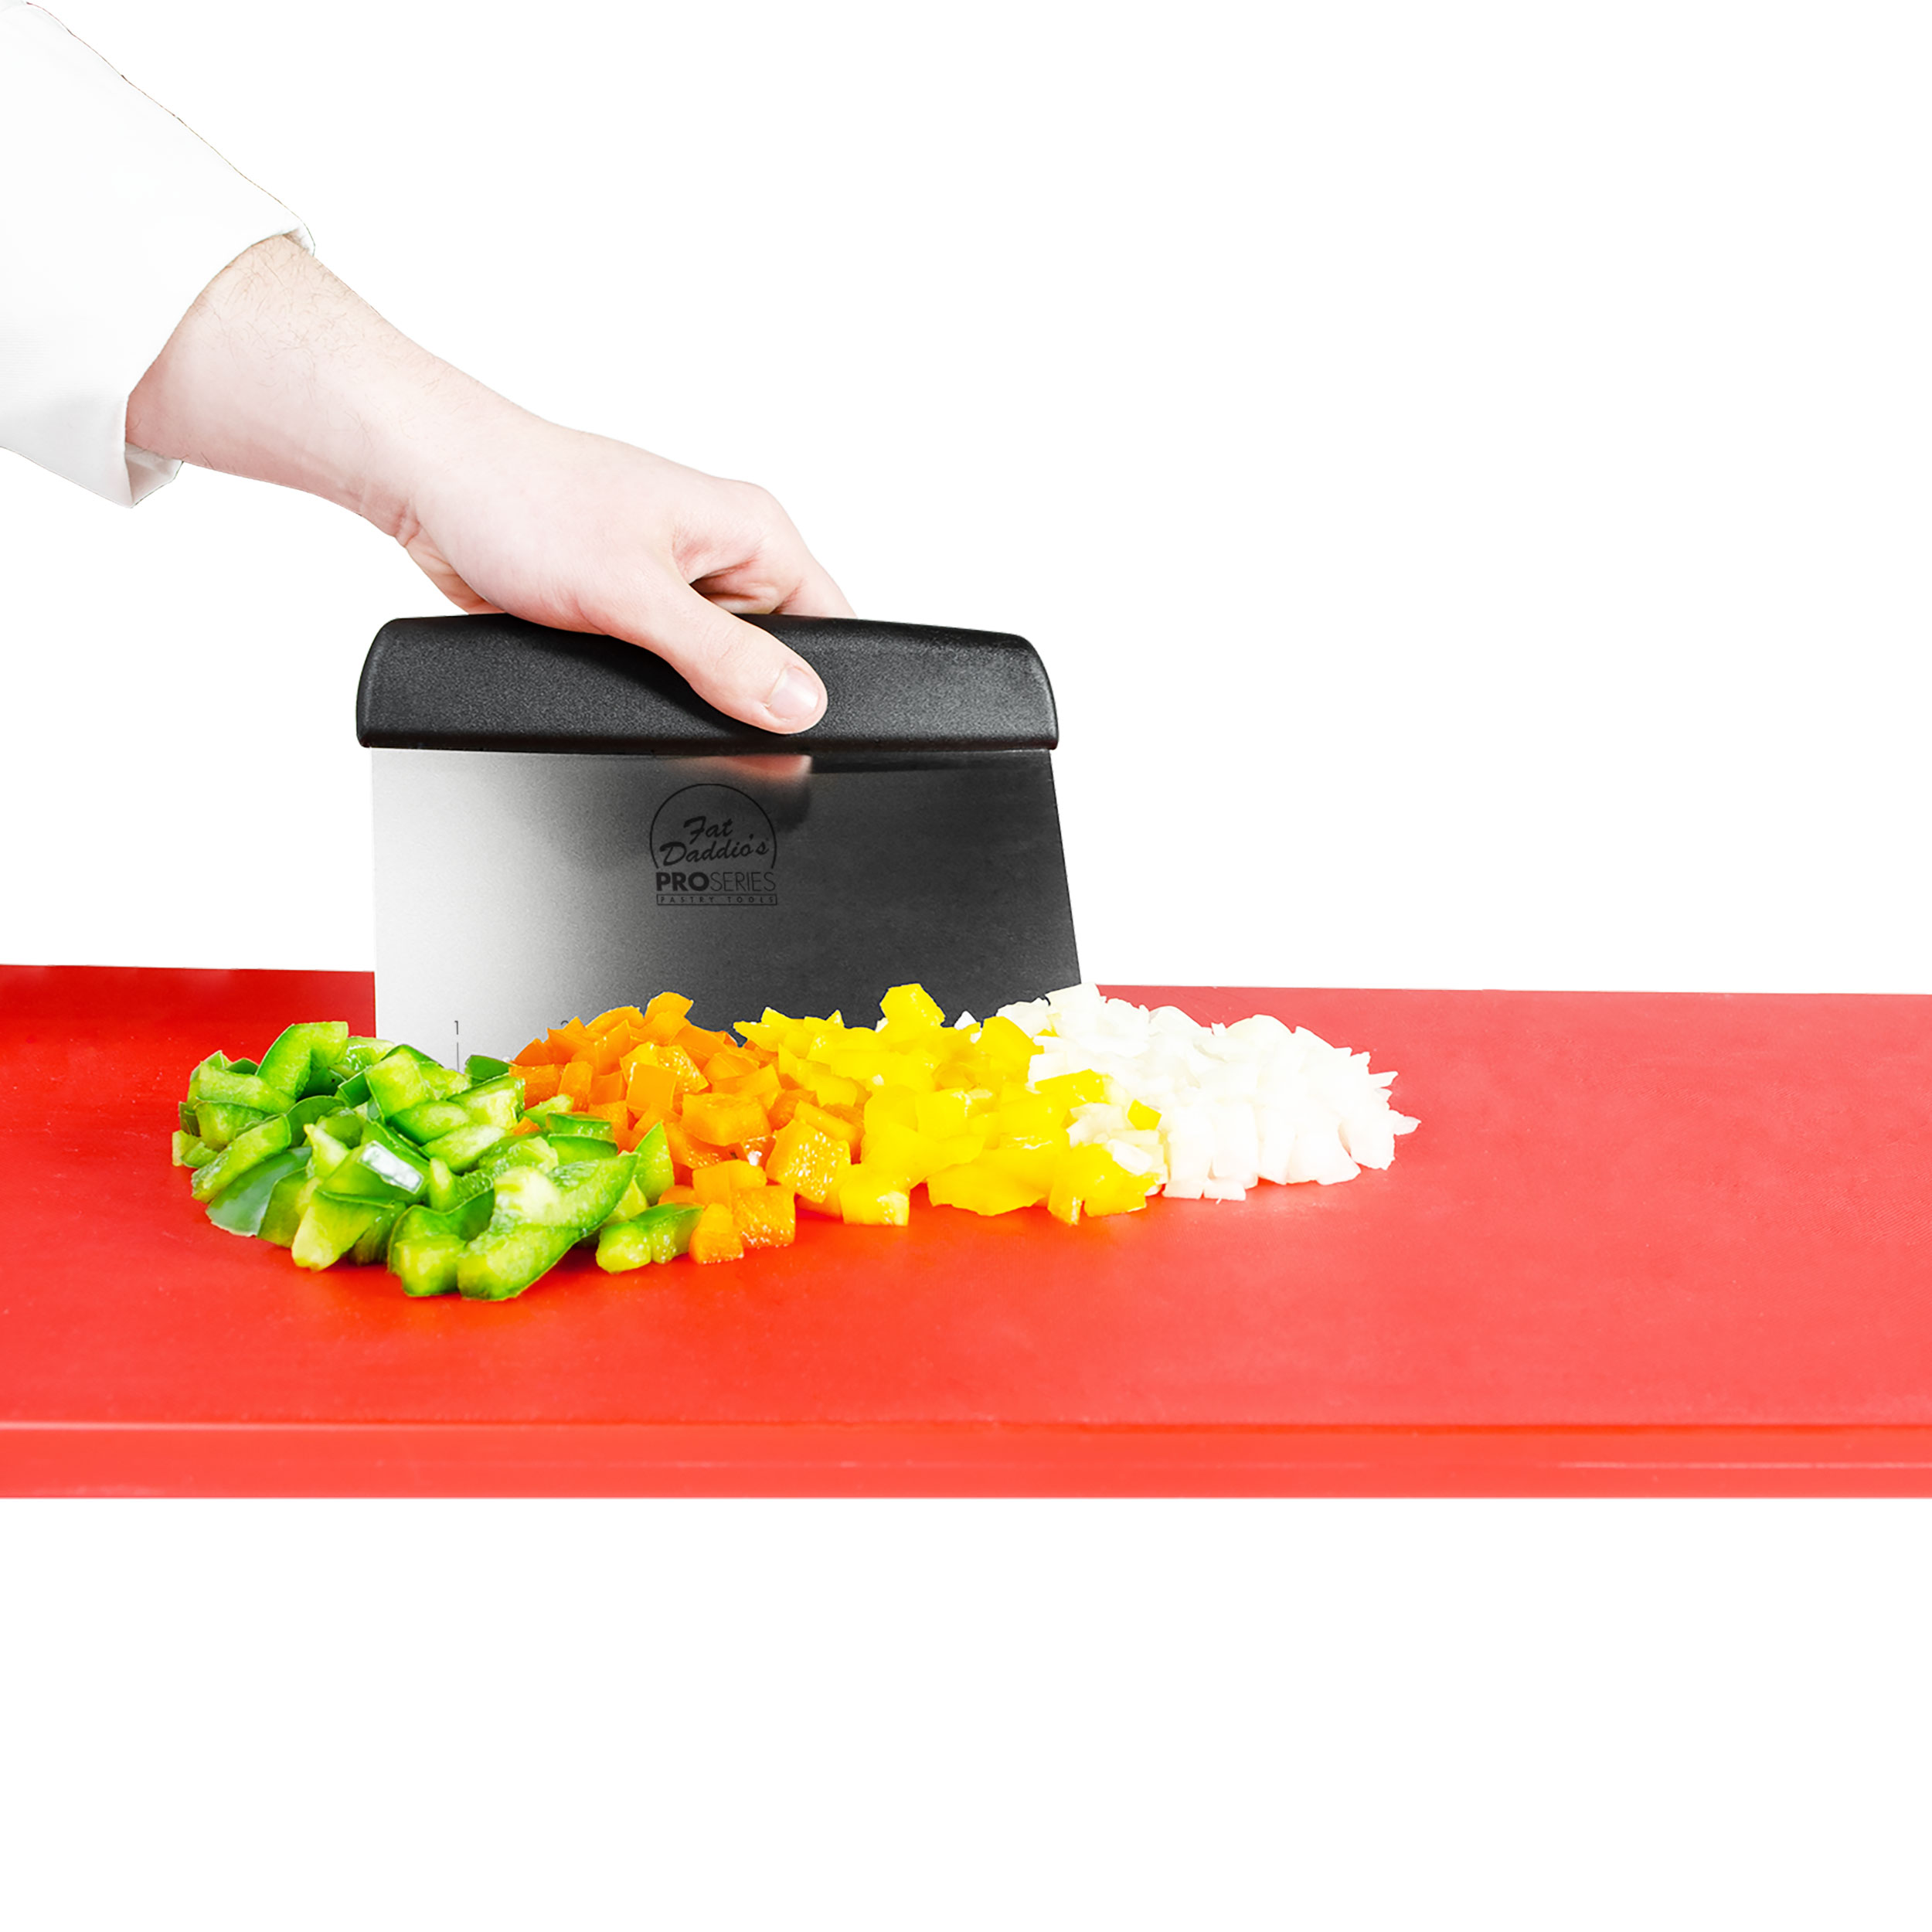 DANDY ScooperDuper™ Folding Bench Scraper / Dough Scraper / Food Scraper /  Multi-Purpose Scooping Tool / Kitchen Gadget for Cutting Board and Chef's  Knife 